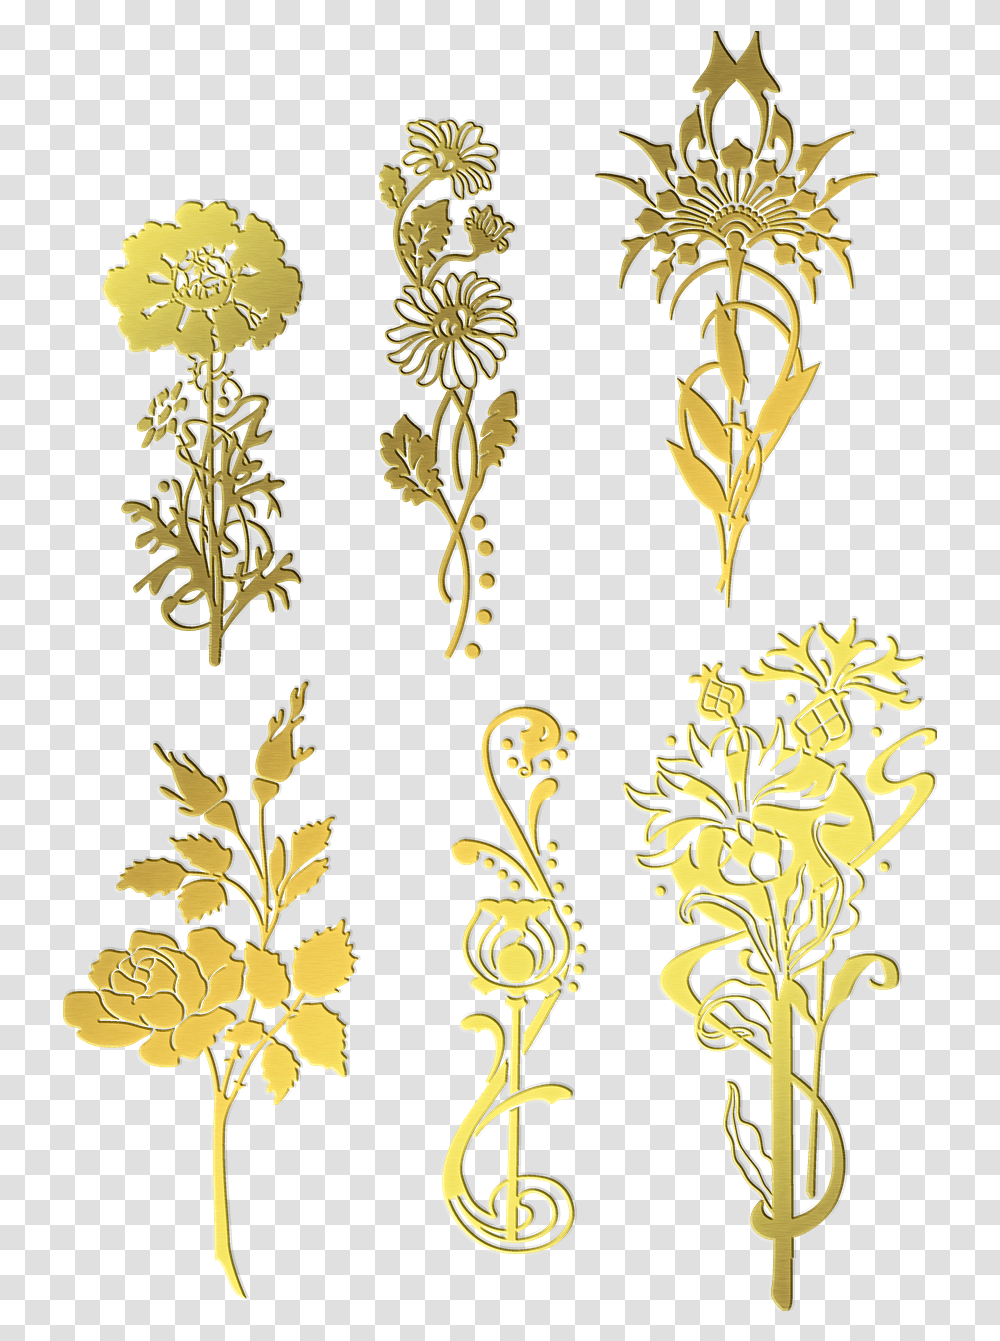 Gold Foil Flowers Flower Free Image On Pixabay Decorative, Floral Design, Pattern, Graphics, Art Transparent Png